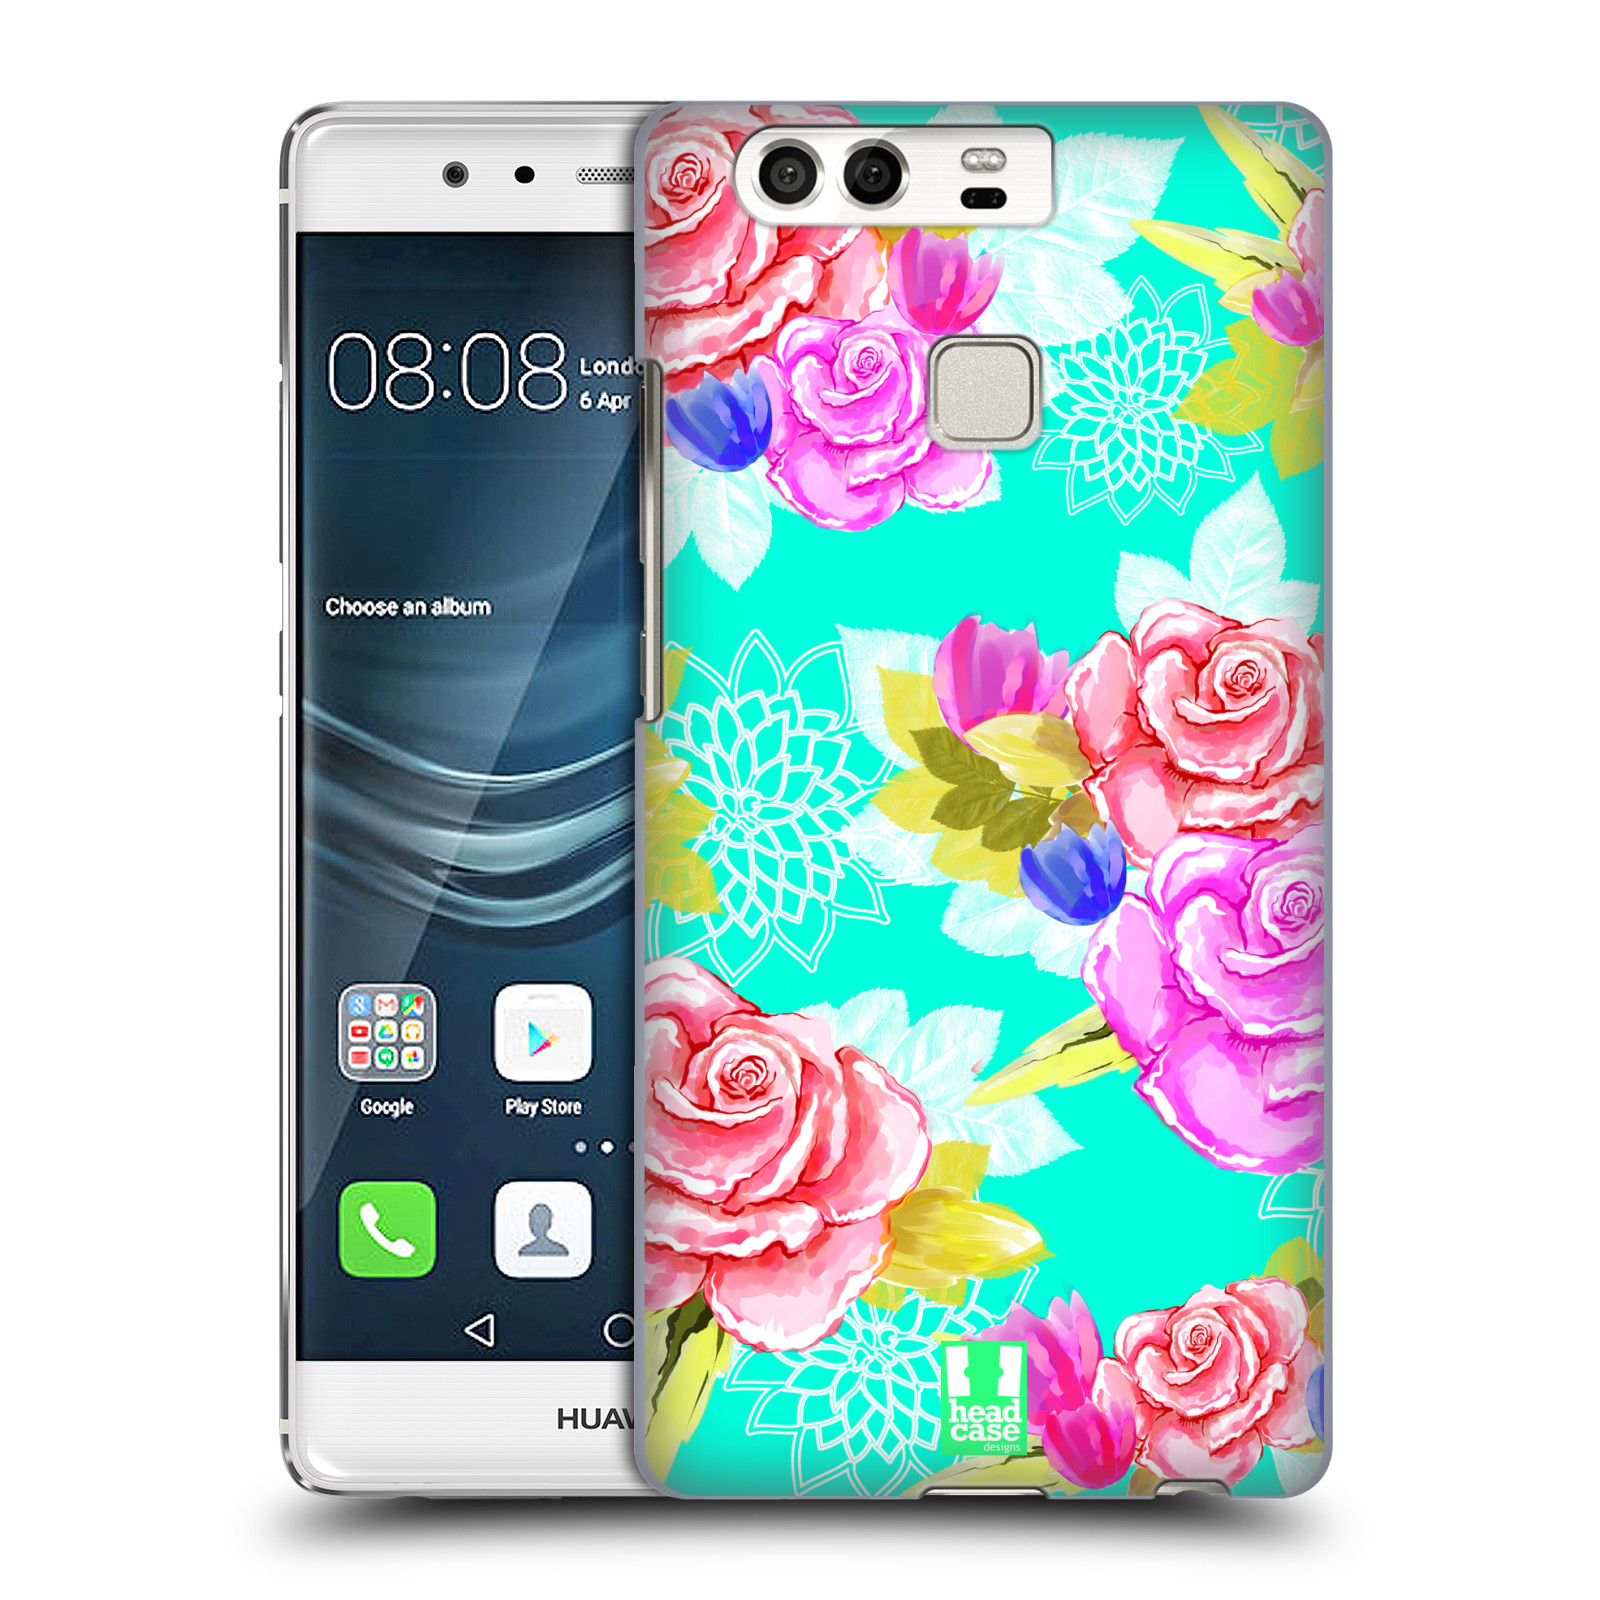 HEAD CASE plastový obal na mobil Huawei P9 / P9 DUAL SIM vzor Malované květiny barevné AQUA MODRÁ